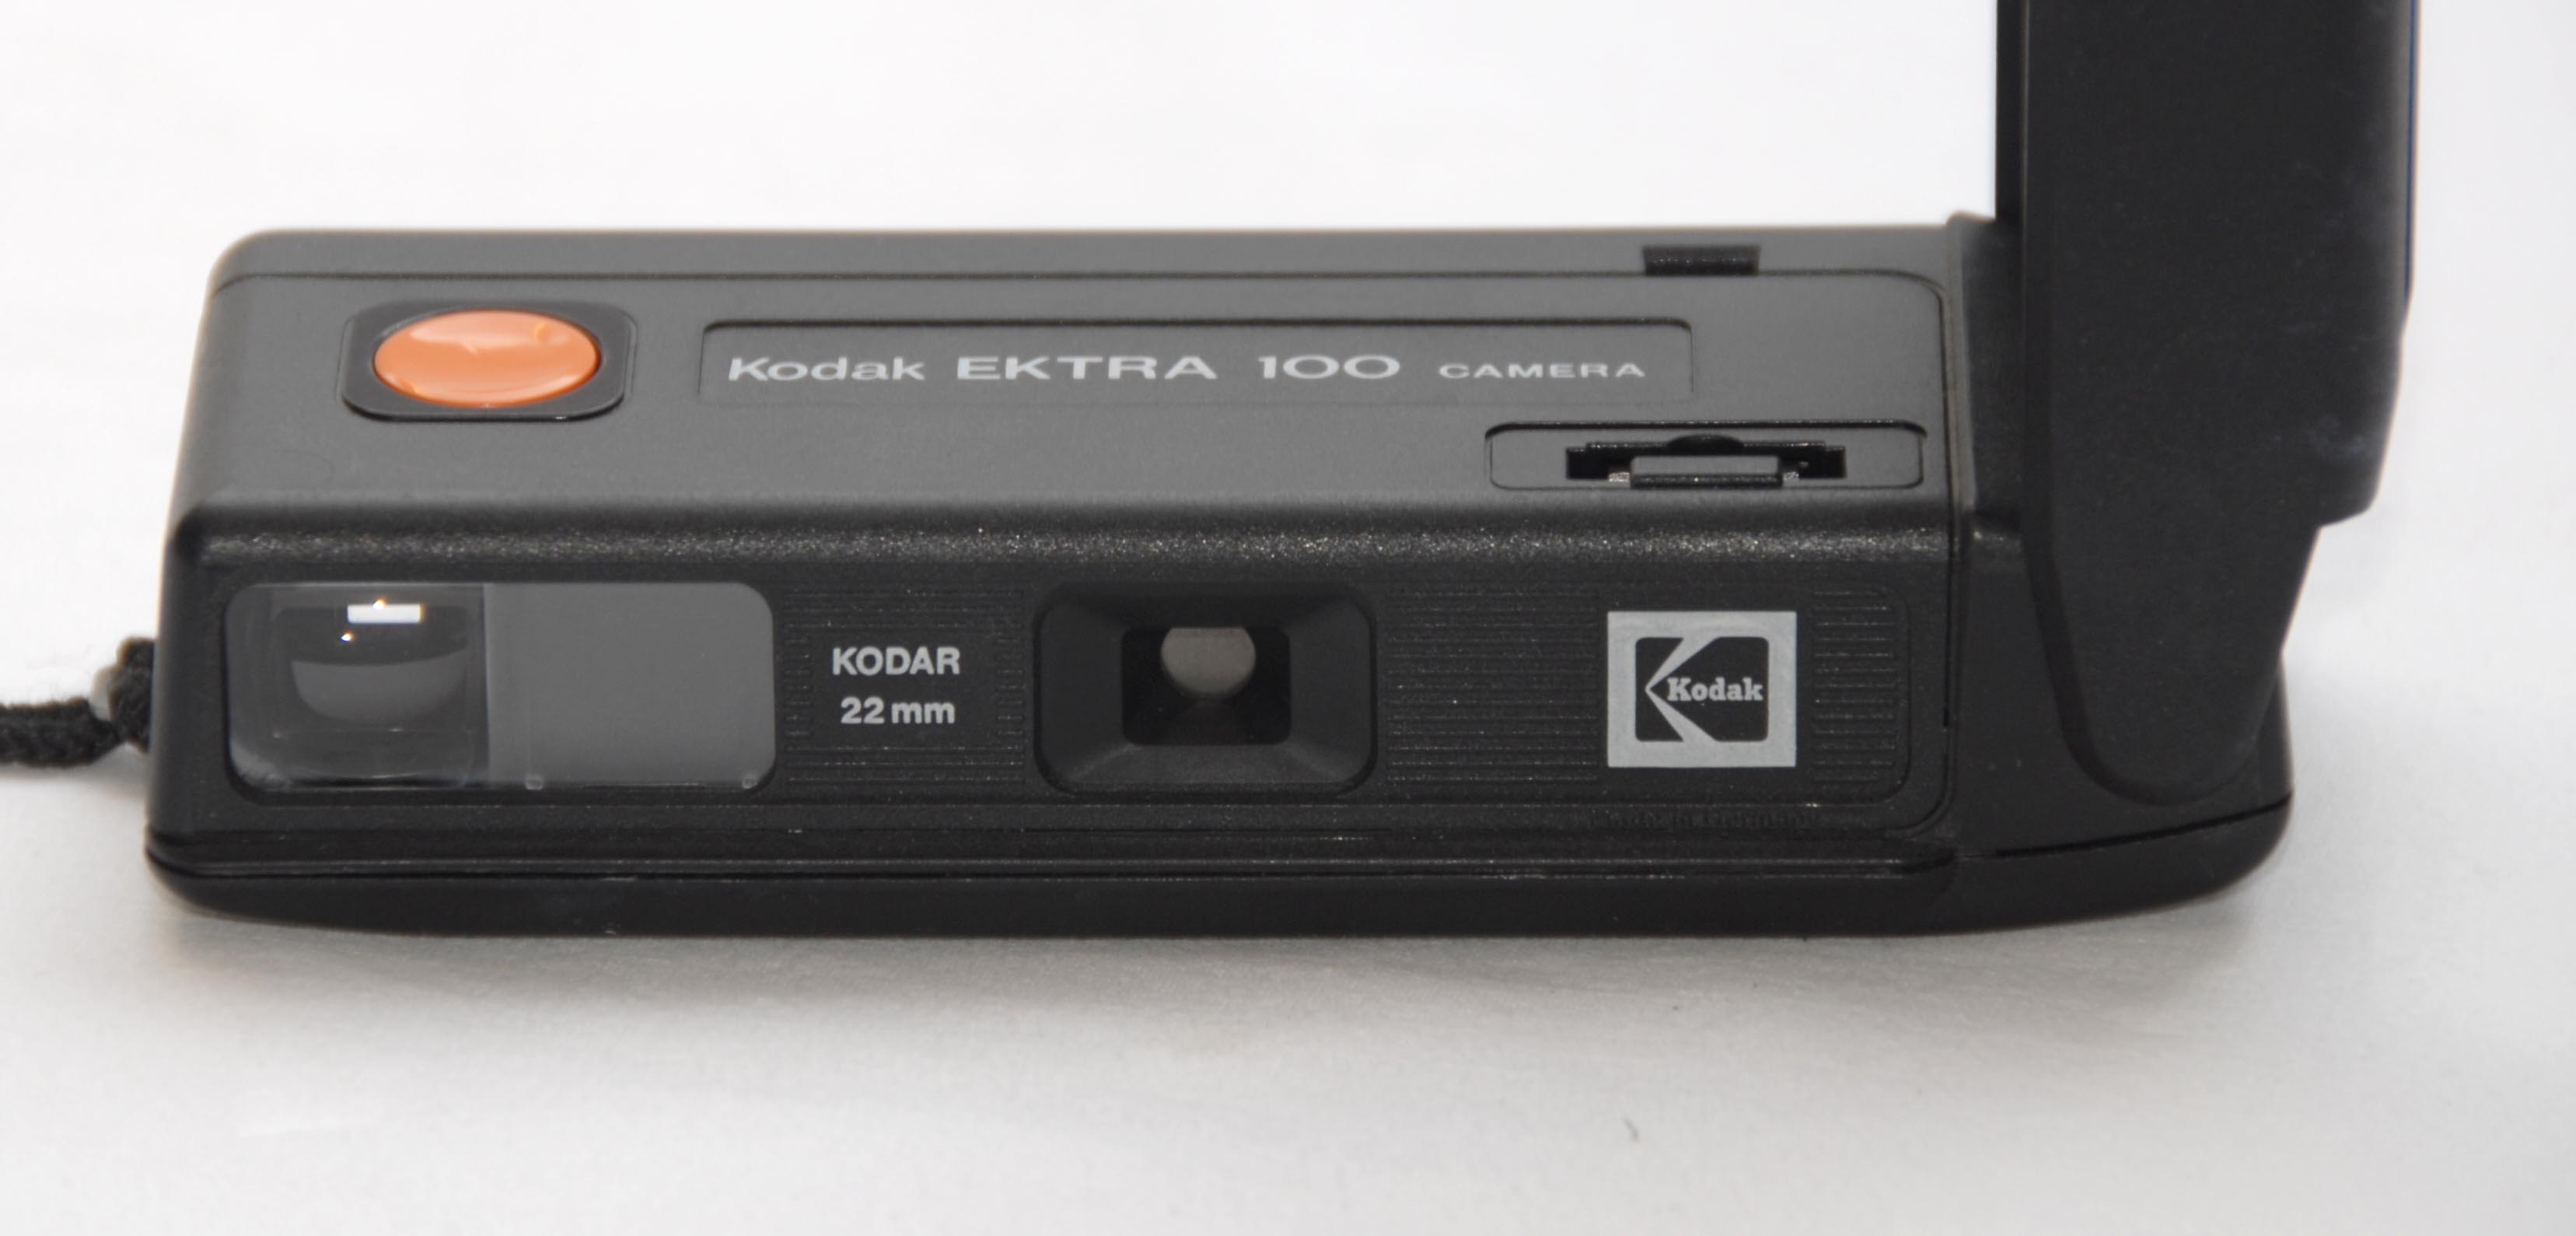 Kodak Kodak Ektra 100 caméra neuf 